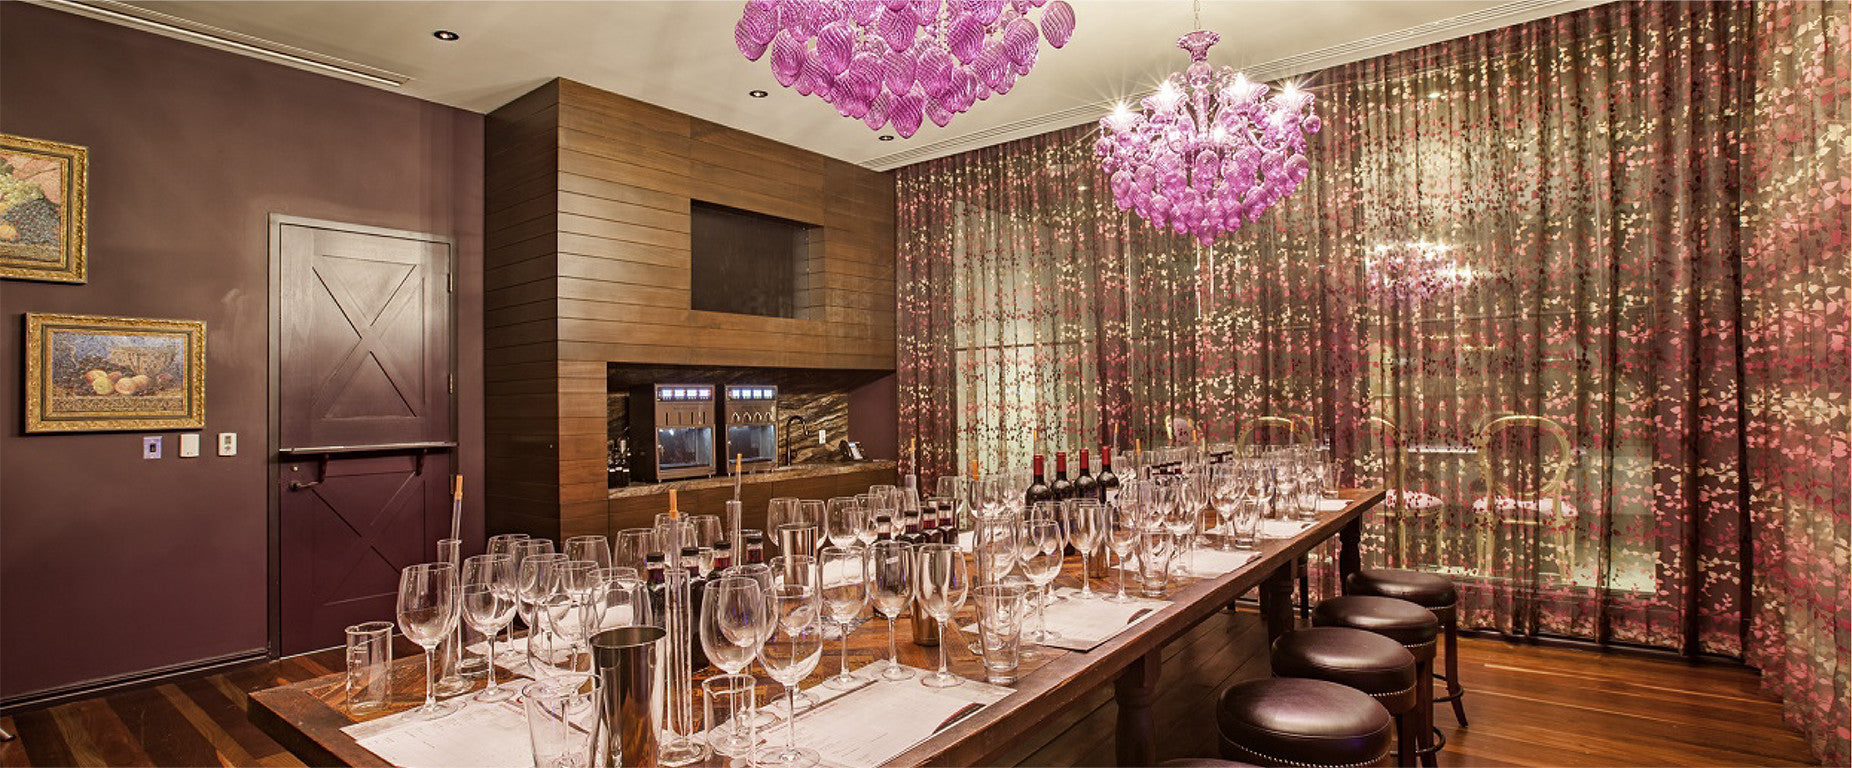 Wine Blending Room